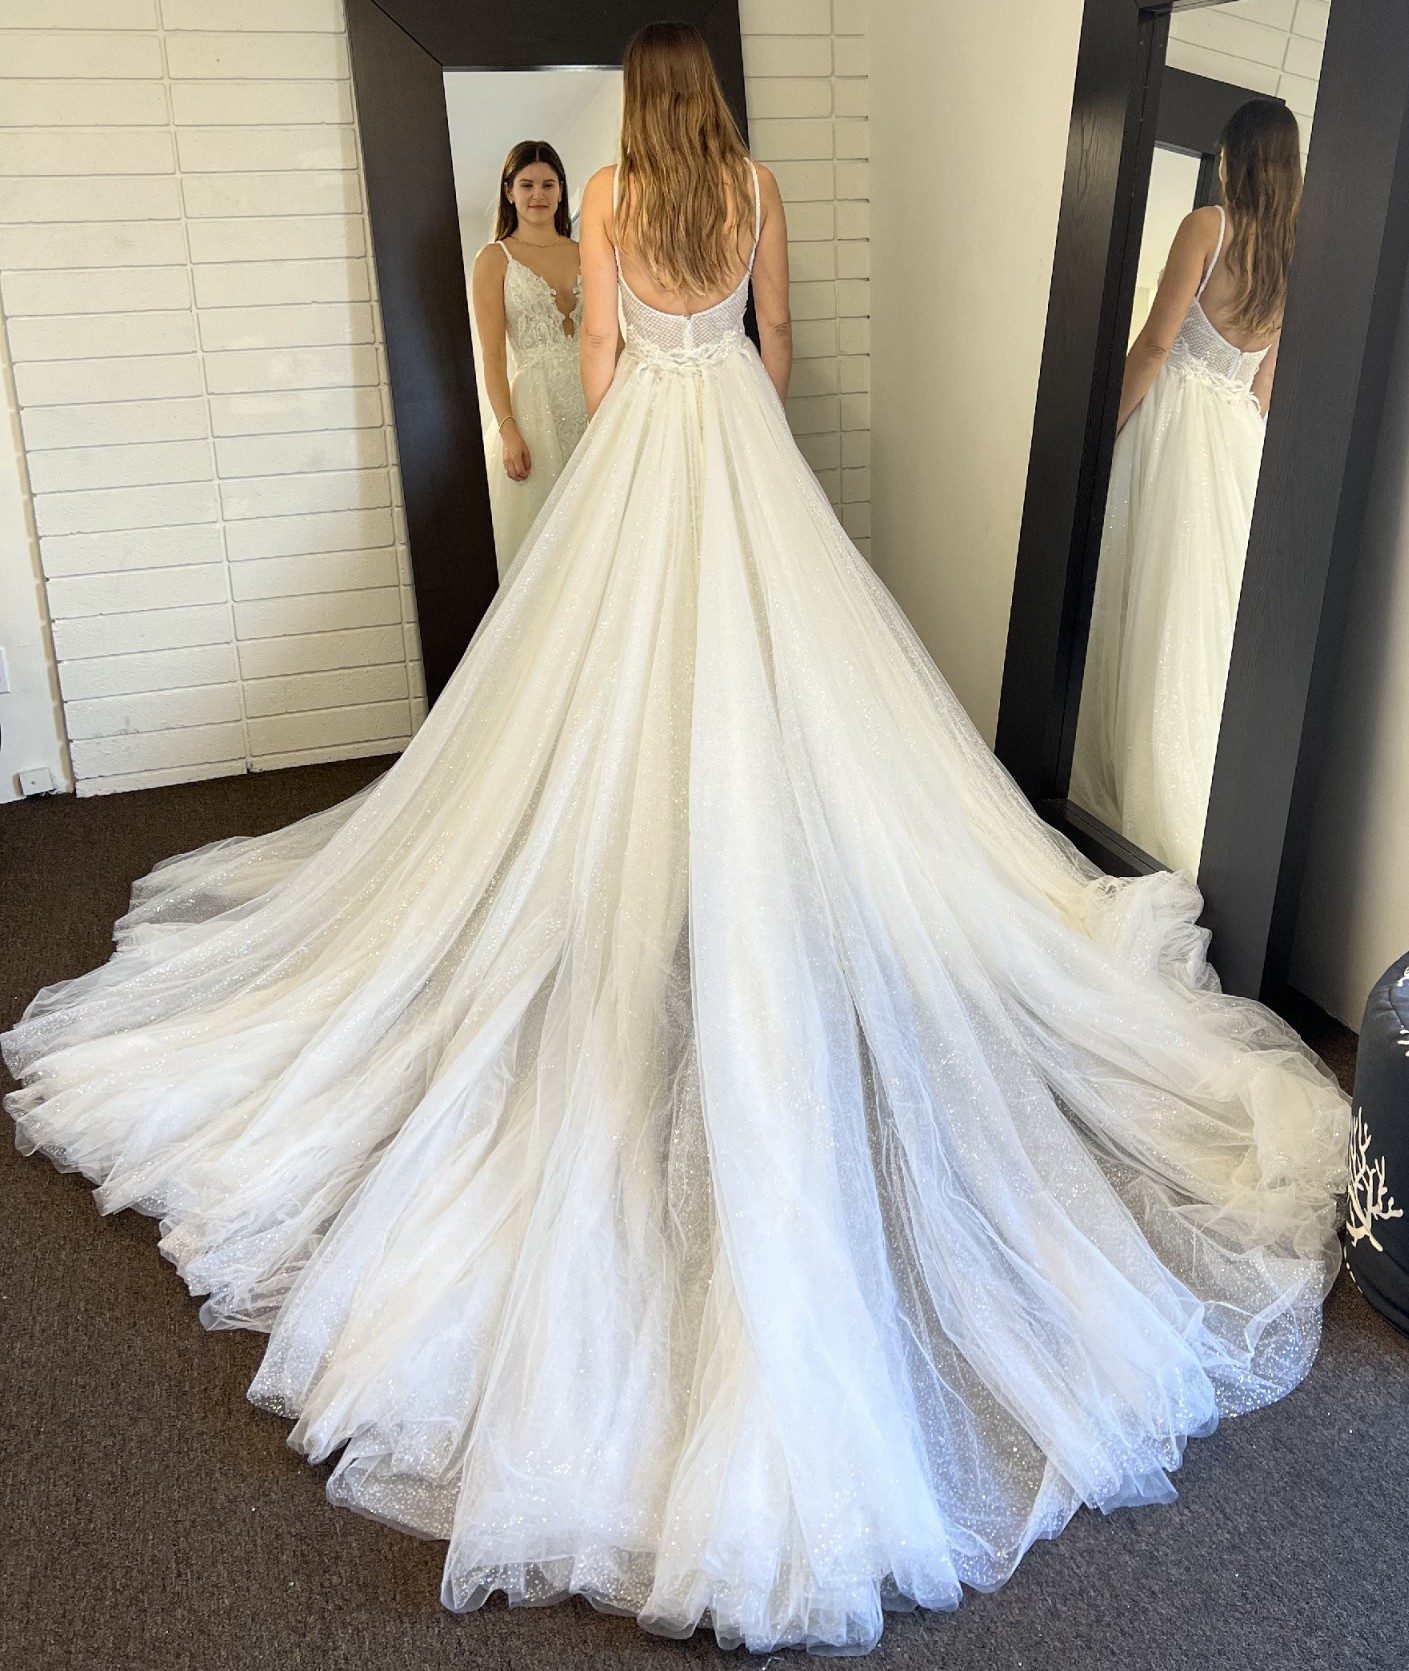 Galia Lahav Aviva Couture Overskirt New Wedding Dress Save 59% - Stillwhite